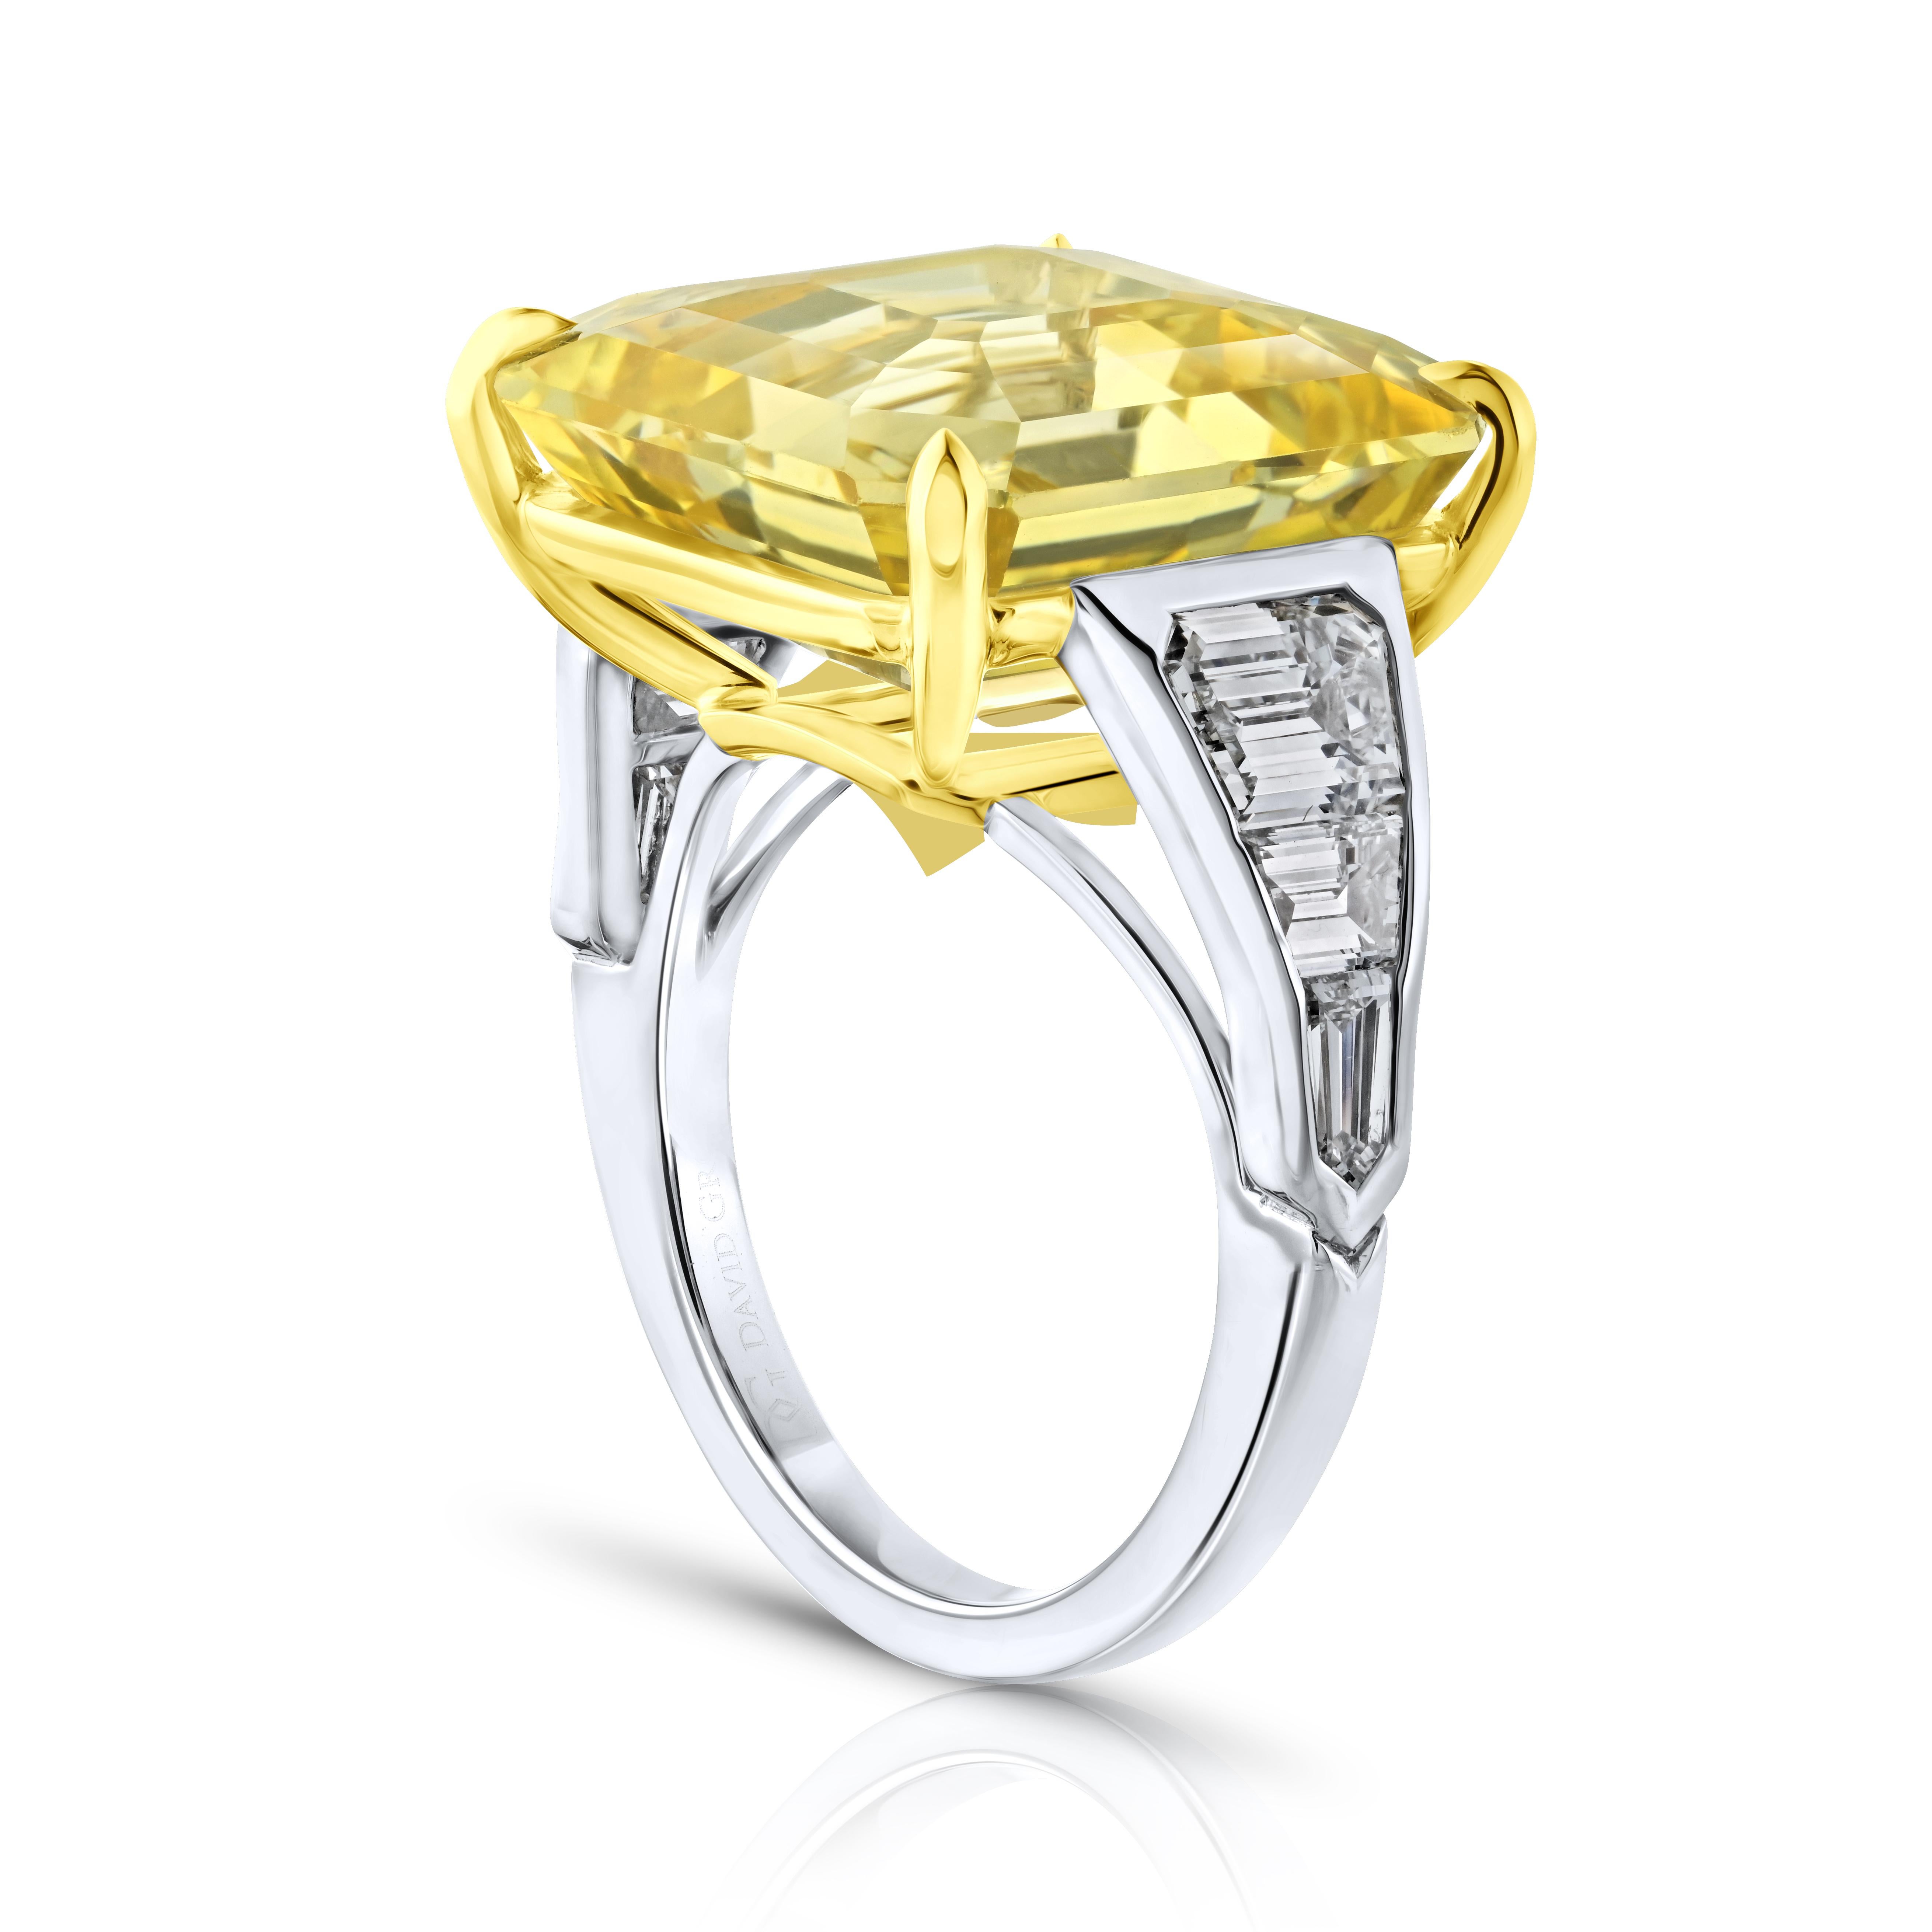 20,41 Karat Asscher Gelber Saphir mit Diamanten 2,08 Karat in einem handgefertigten Ring aus Platin und 18k gefasst